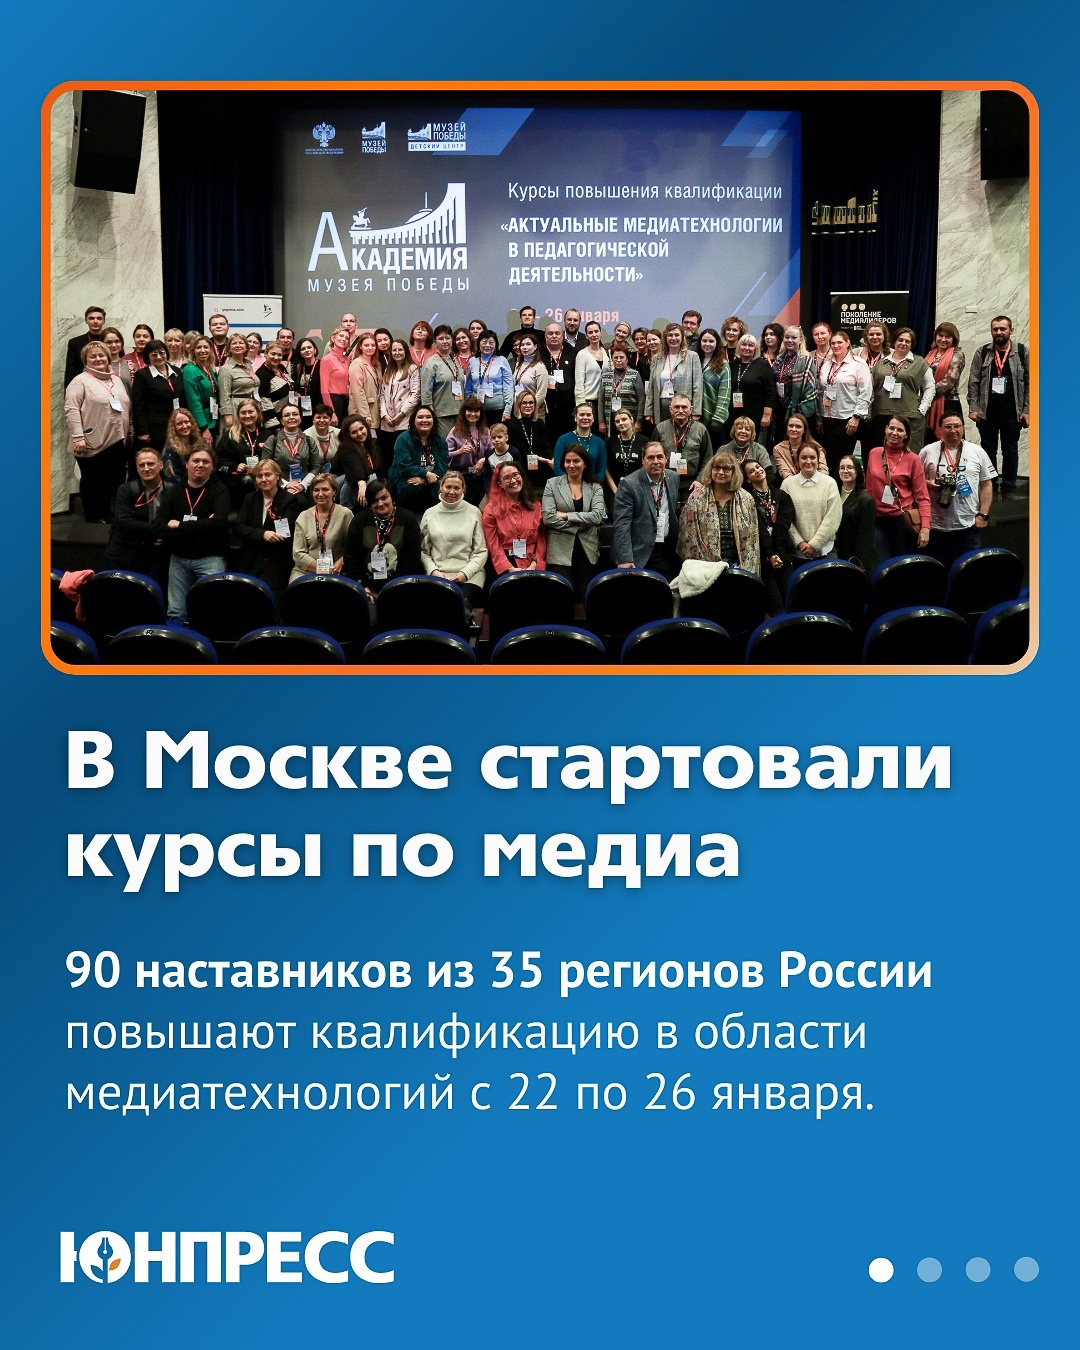 Всю республику Башкортостан представлял в Москве преподаватель современных медийных технологий МЦ «Вираж» И